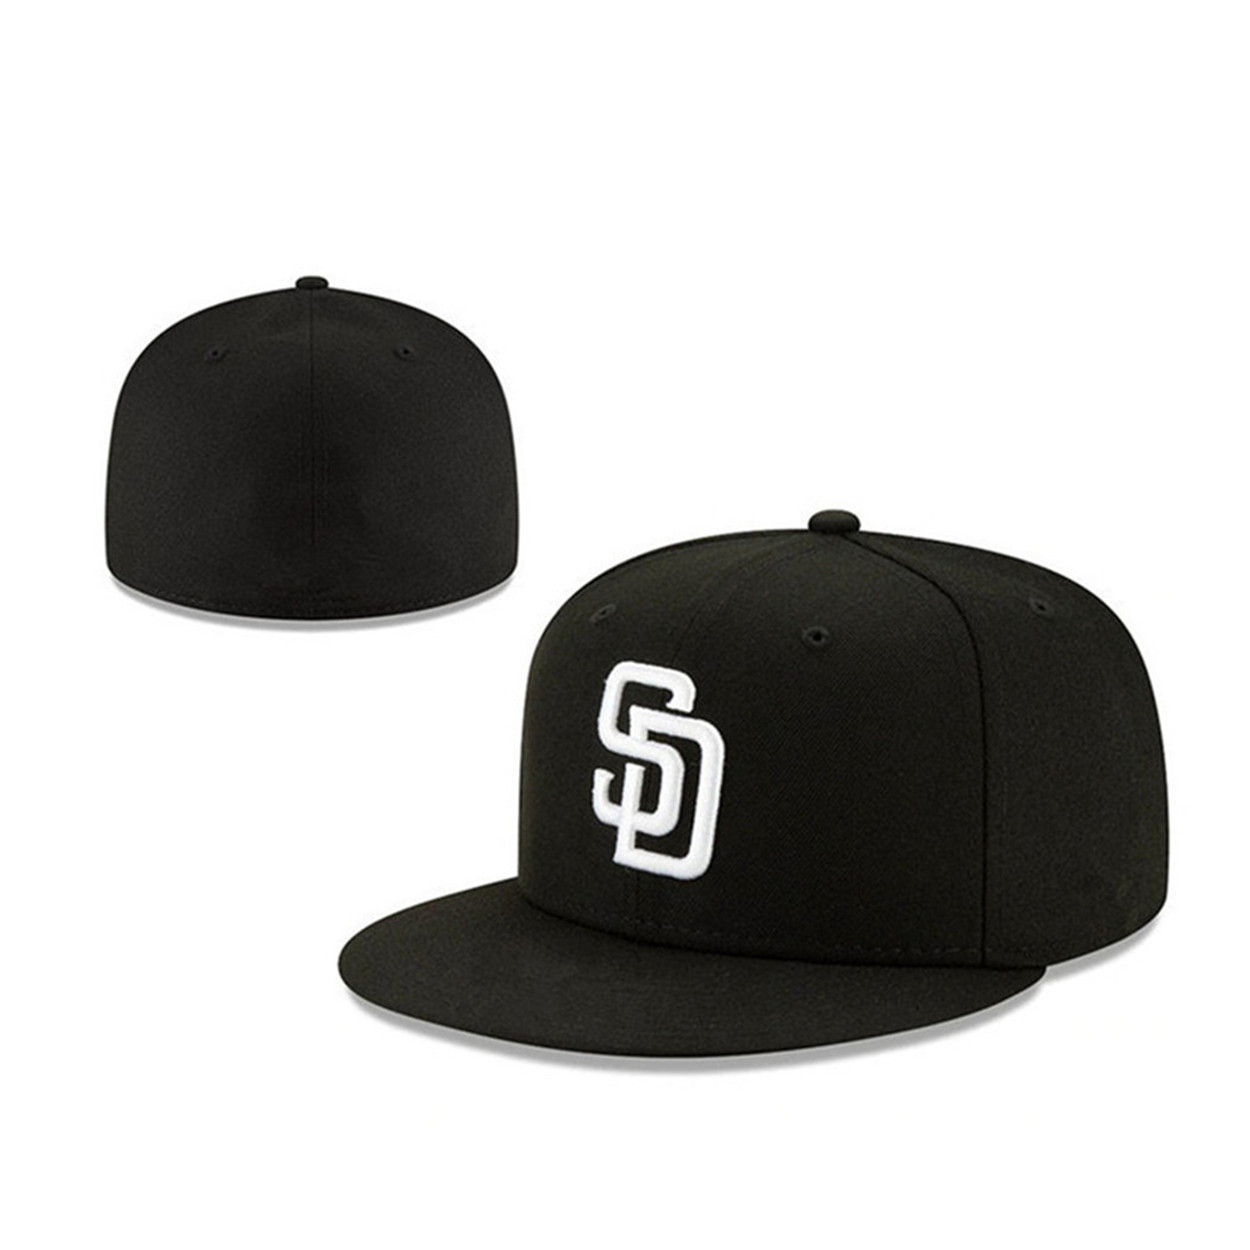 Yeni San Diego Beyzbol Takımı Snapback Tam Kapalı Kapaklar Yaz SD Mektubu Gorras Bones Erkekler Kadın Günlük Açık Spor Düz takılı şapkalar Chapeau Cap A-7